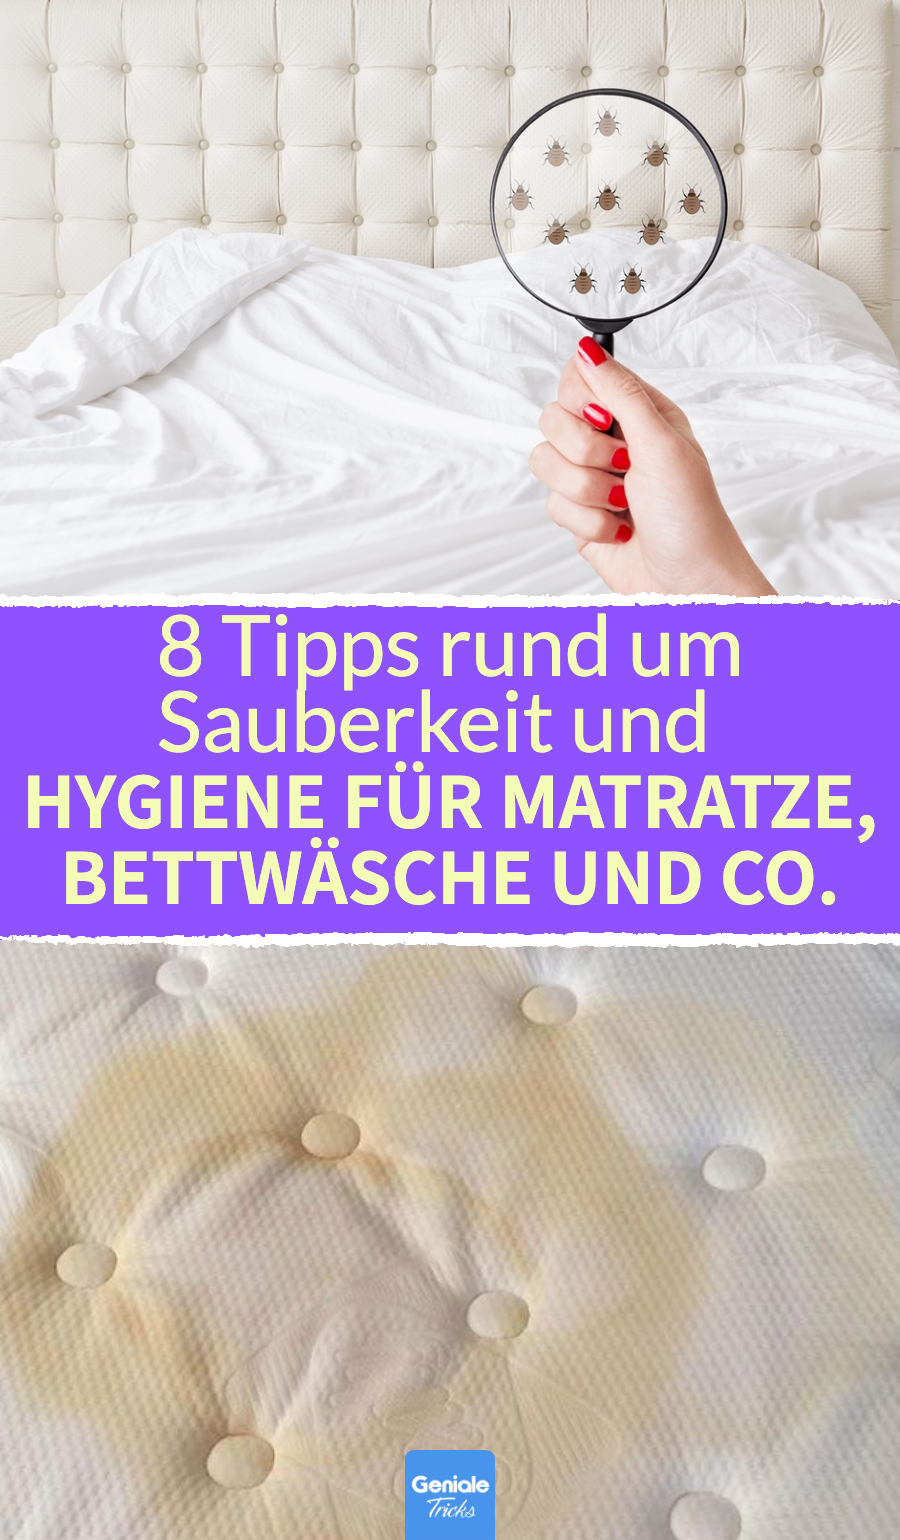 Bei einem dreckigen Bett helfen diese 8 Hygiene-Tipps